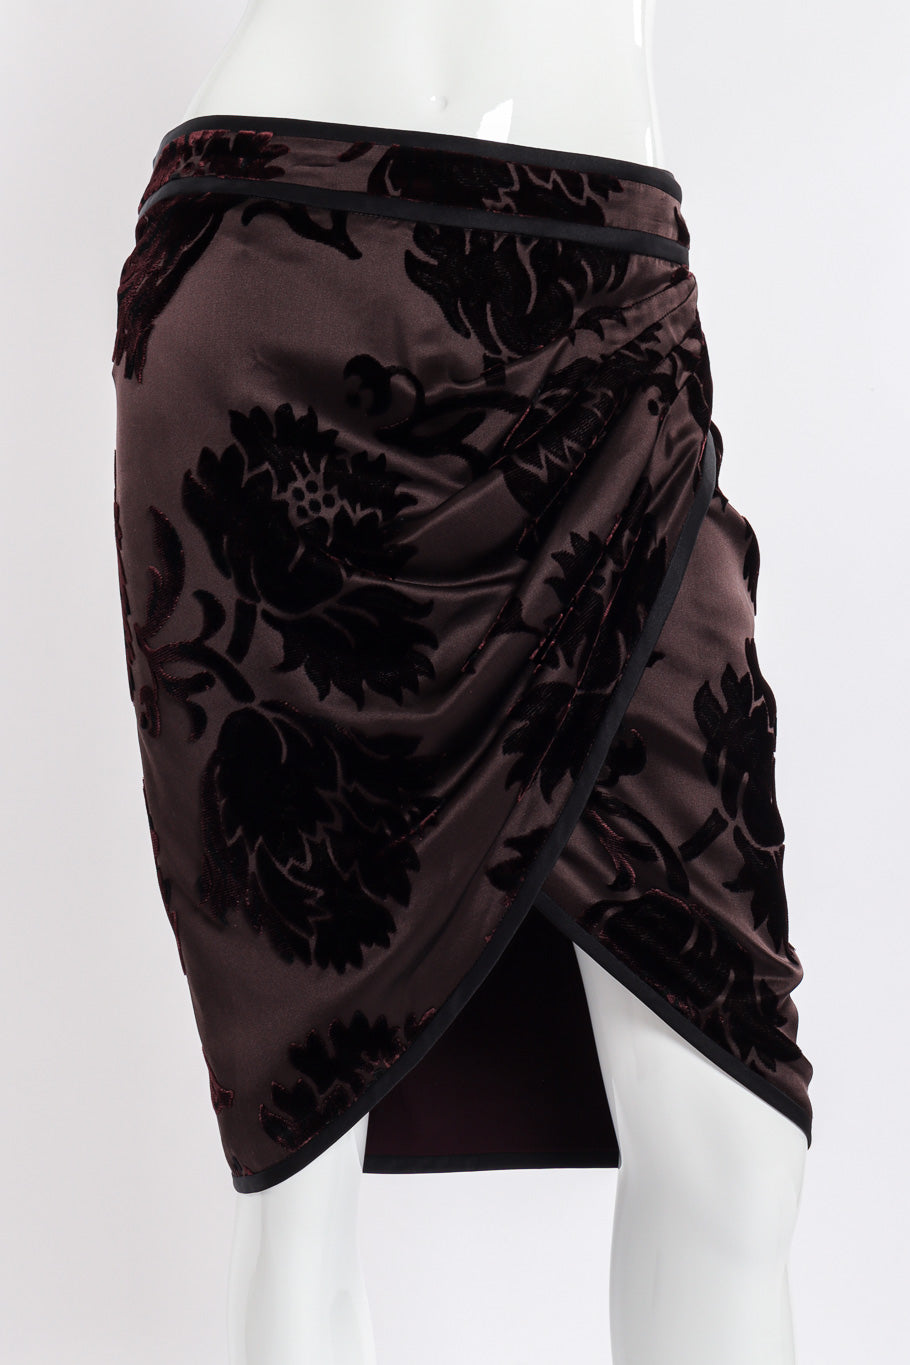 Gucci Velvet Burnout Wrap Skirt front view closeup on mannequin @Recessla